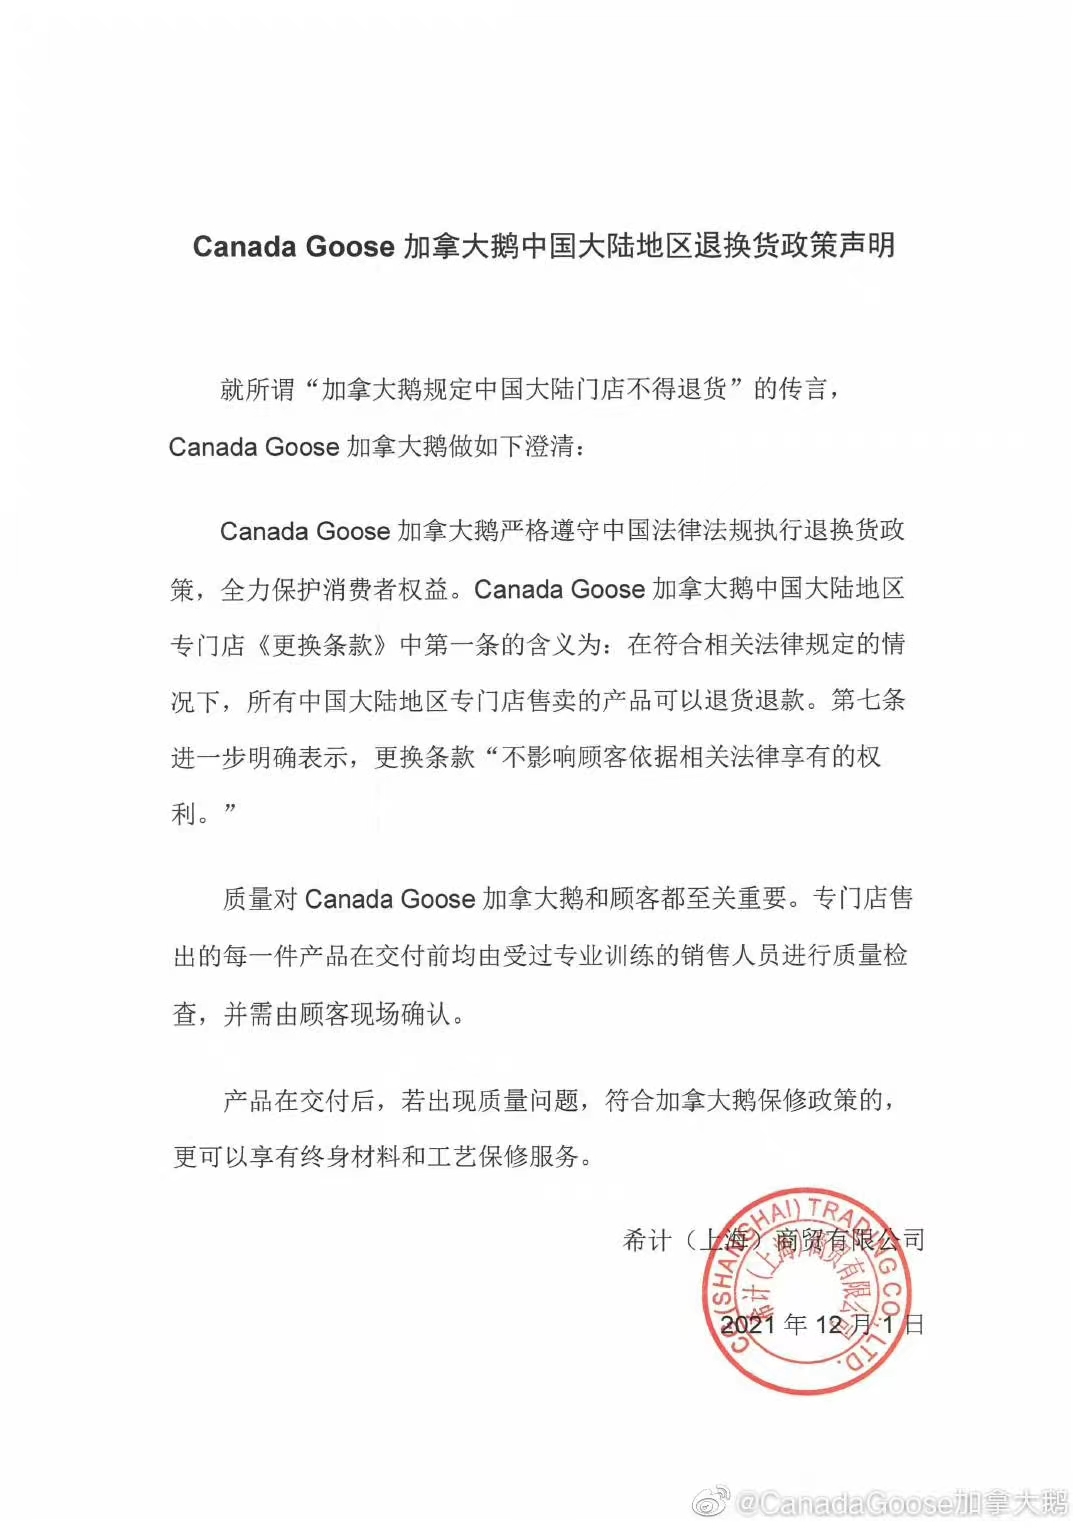 加拿大鹅发布的声明。来源：微博@Canada Goose加拿大鹅。